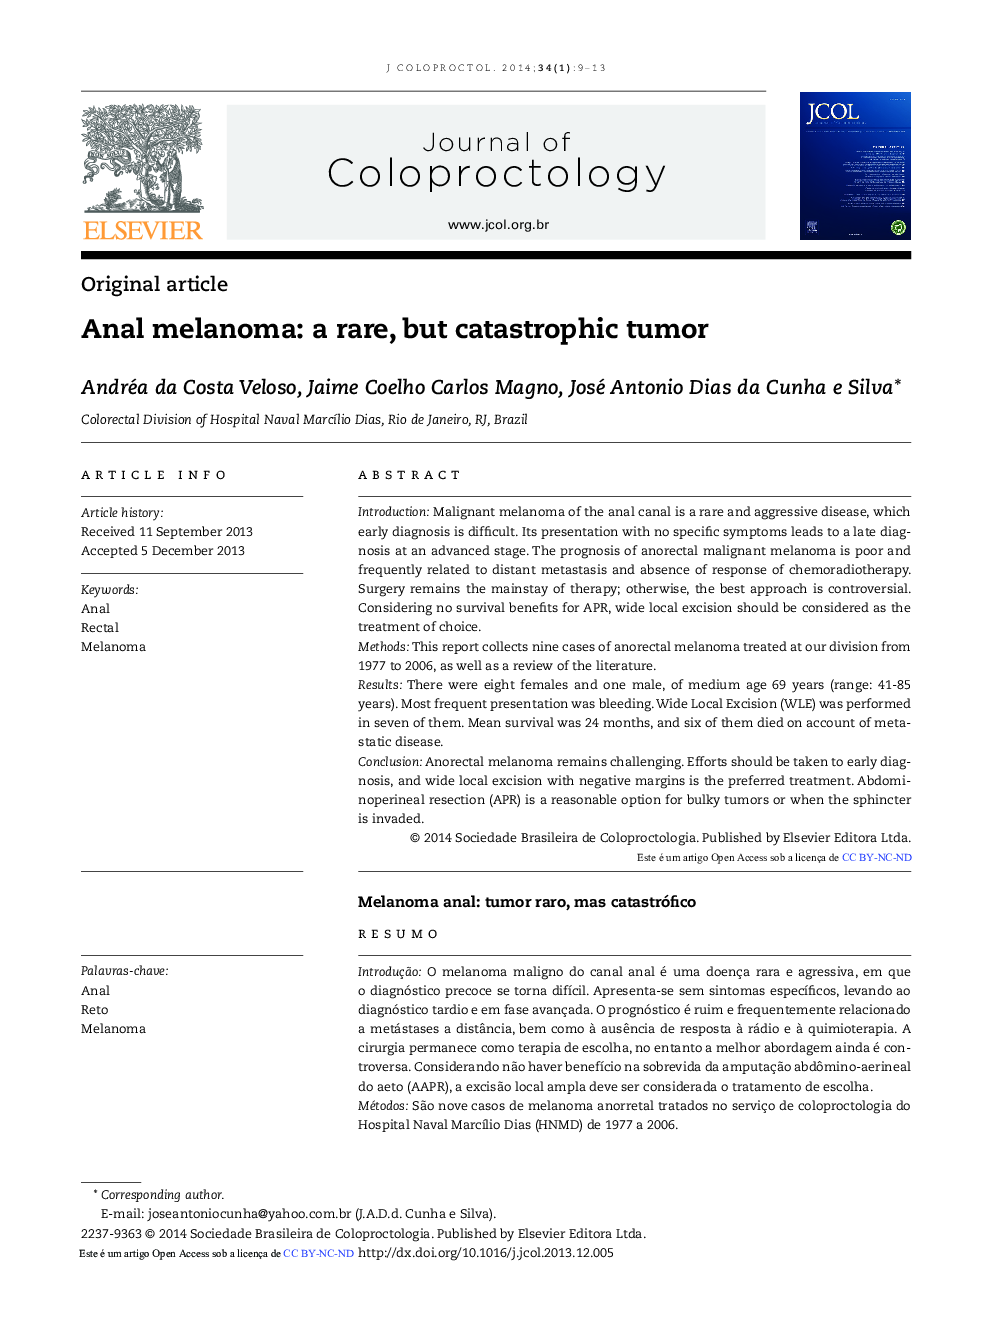 Anal melanoma: a rare, but catastrophic tumor